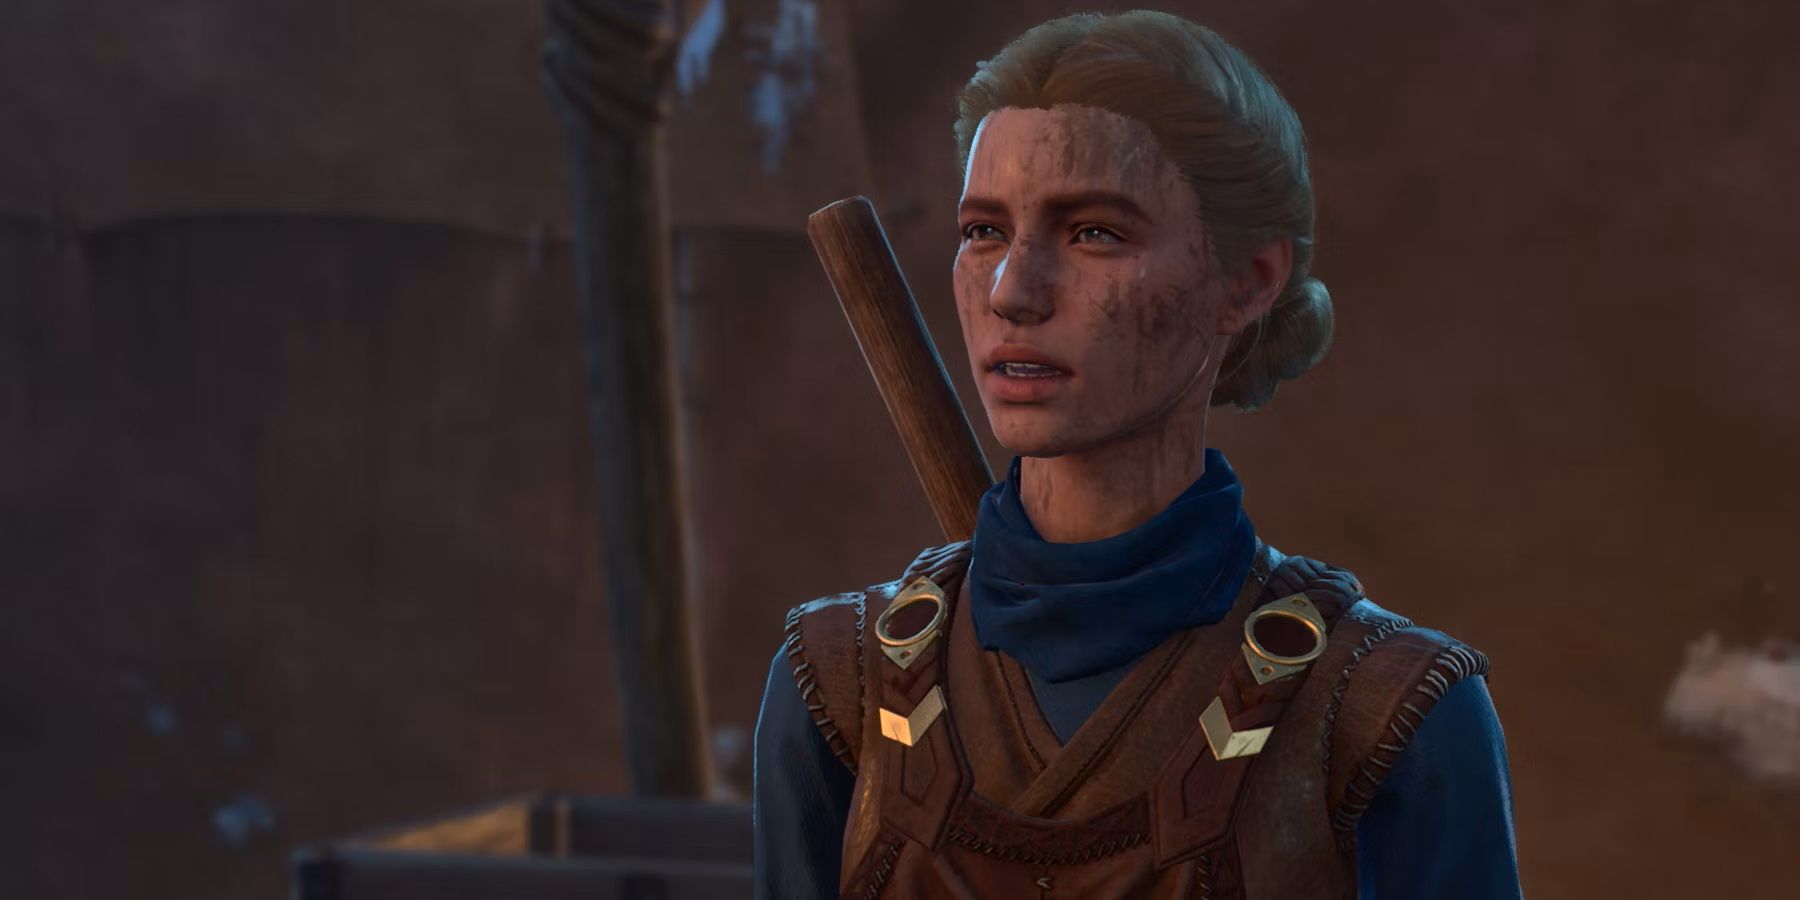 Скриншот интенданта Талли, стоящего на месте в таверне «Последний свет» из Baldur's Gate 3.